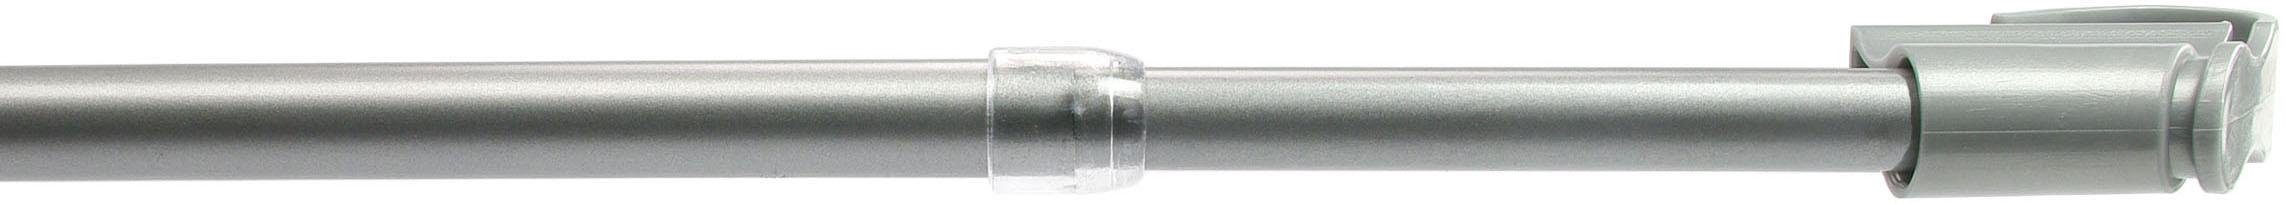 Scheibenstange, Liedeco, Ø 12 mm, 1-läufig, ausziehbar, ohne Bohren,  geklemmt, geeignet für leichte Stoffe